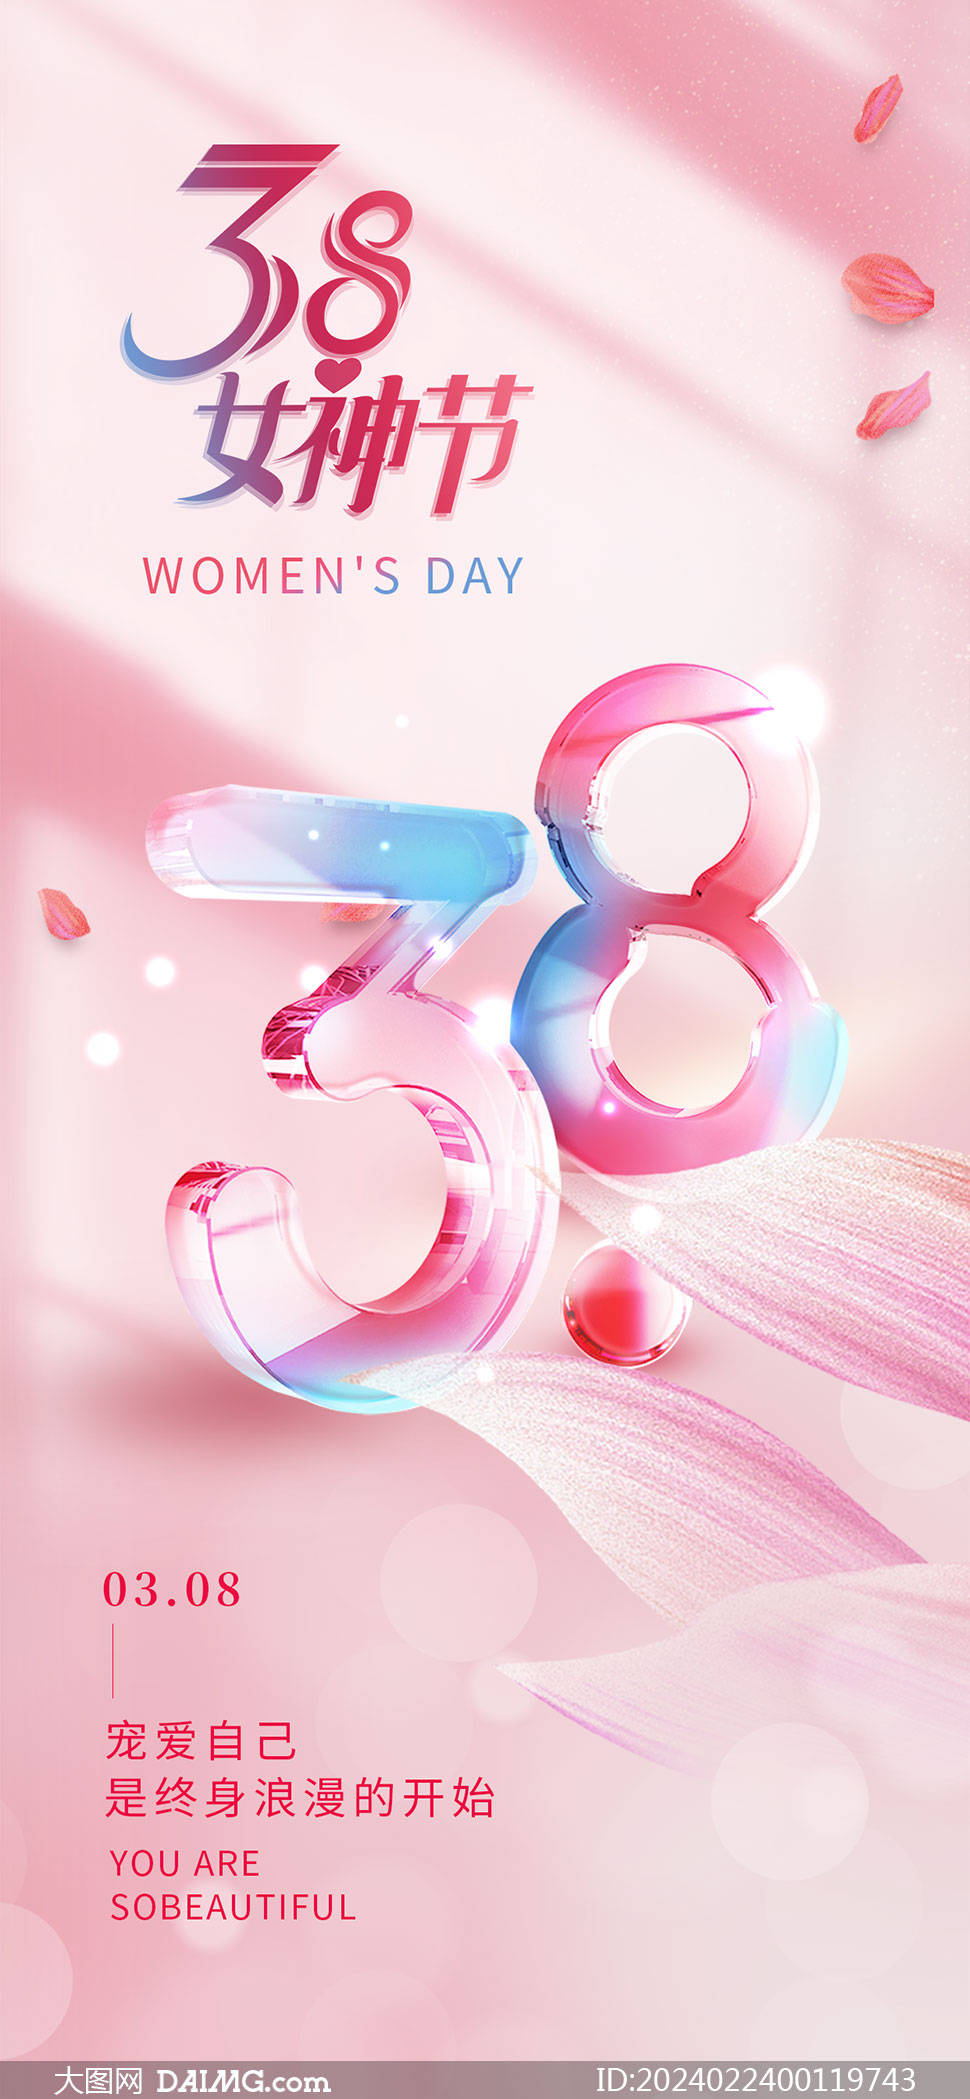 38妇女节手机端海报模板 